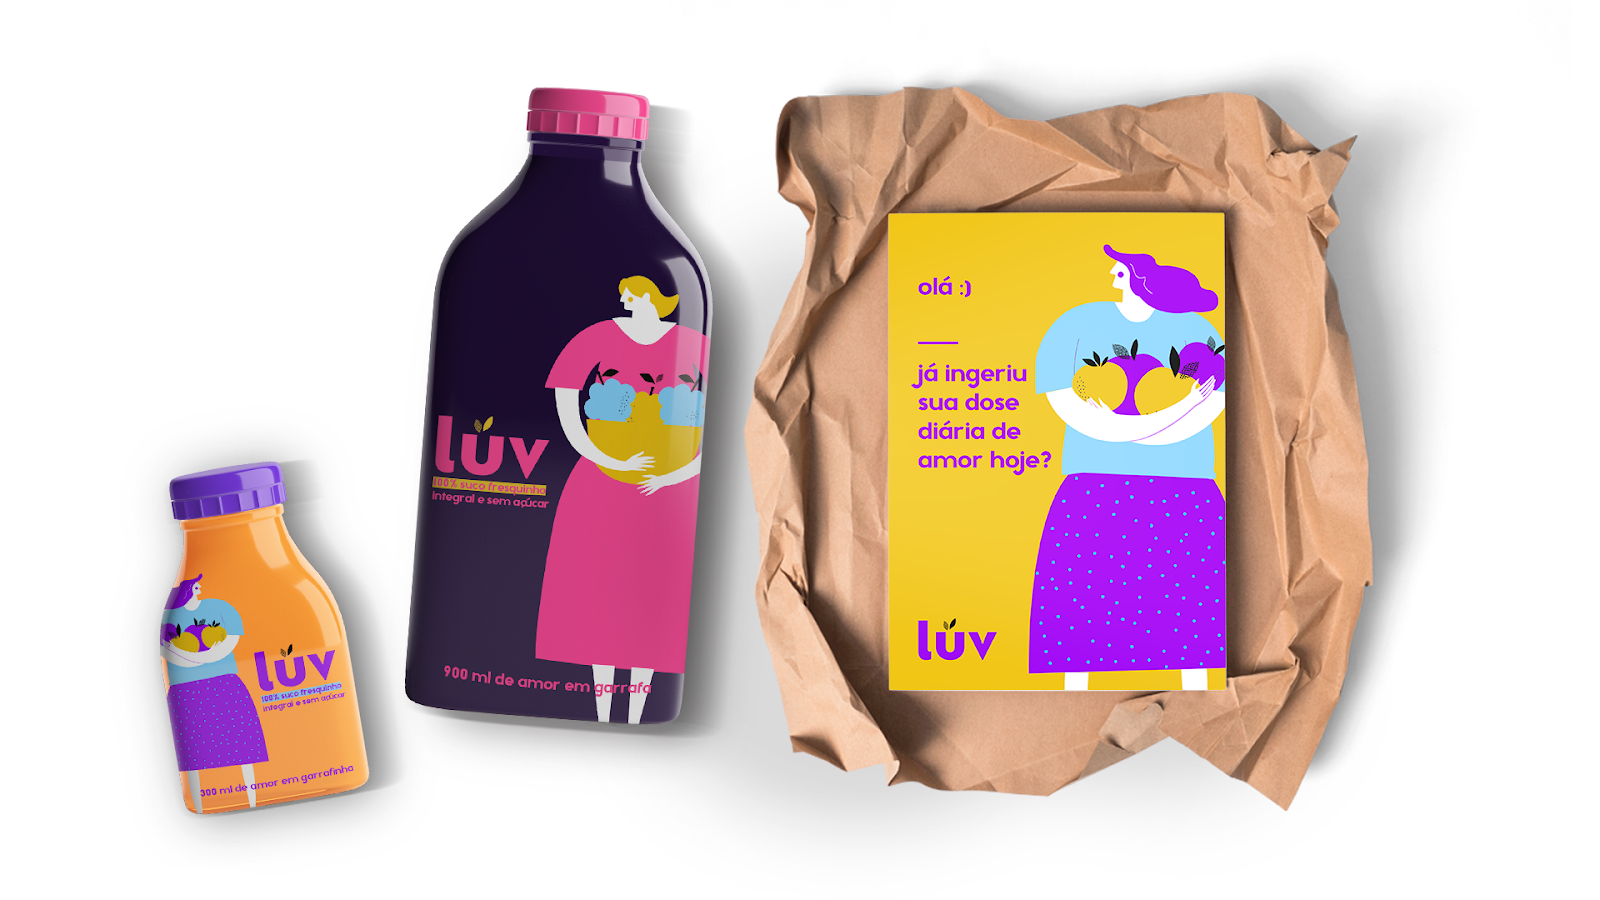 果汁饮料饮品西安oe欧亿体育app官方下载
品牌策划包装设计VI设计logo设计